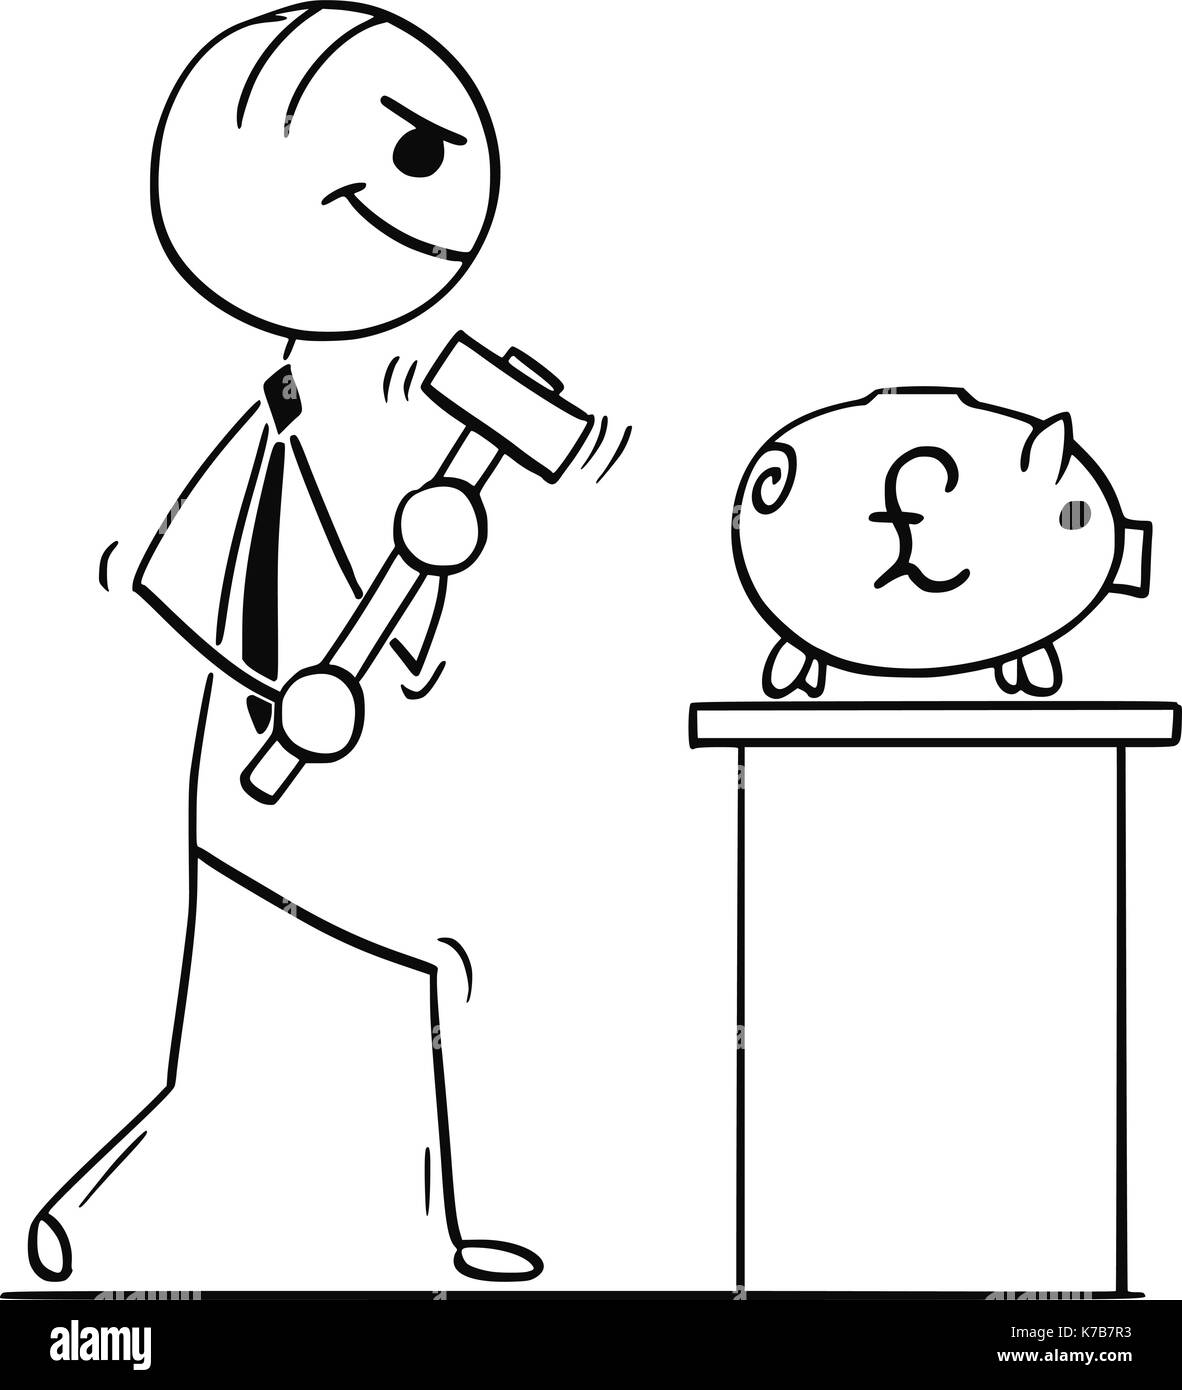 Cartoon stick Mann Abbildung: Lächeln, Geschäftsmann oder Politiker gehen mit Hammer das Sparschwein mit Raute zu brechen. Stock Vektor